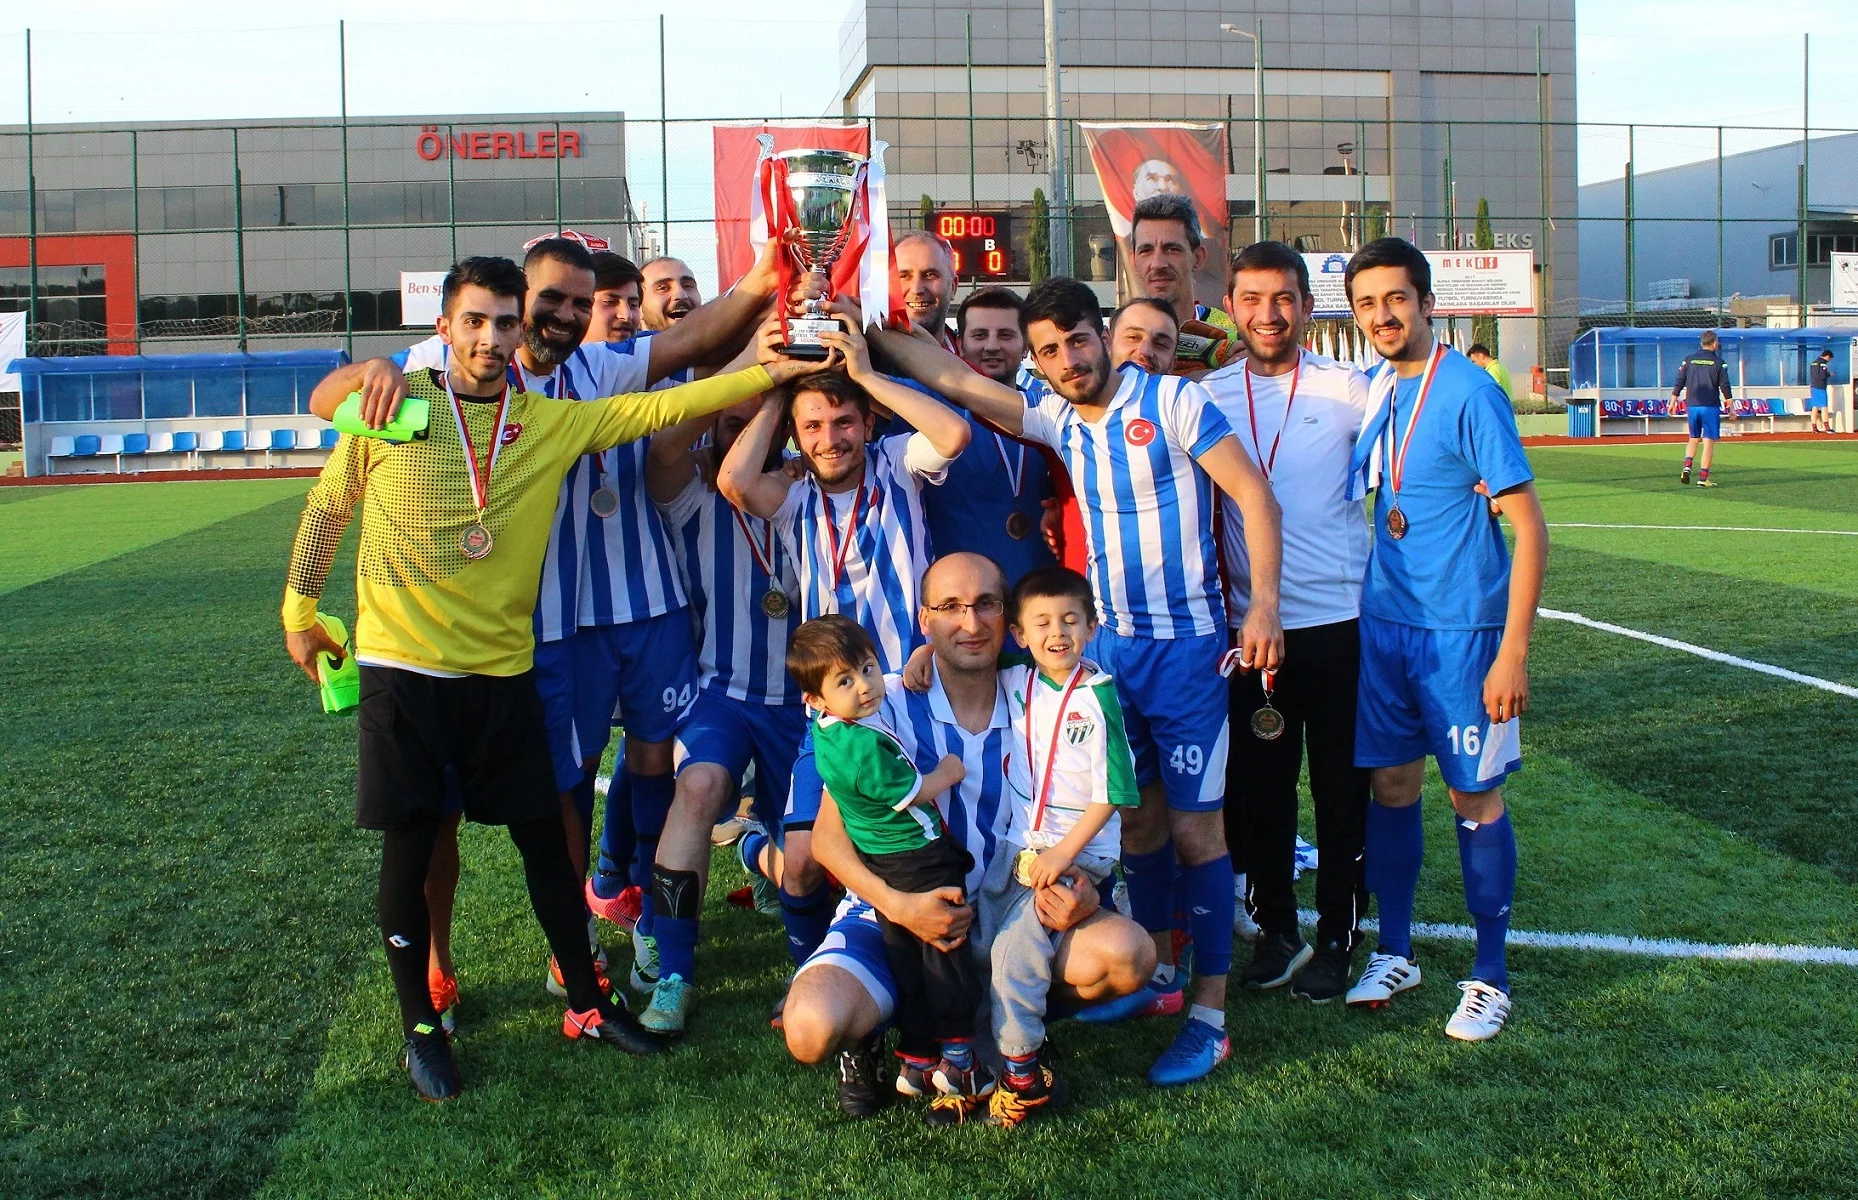 BOSİAD Futbol Turnuvası’nın  şampiyonu Beyçelik Gestamp oldu